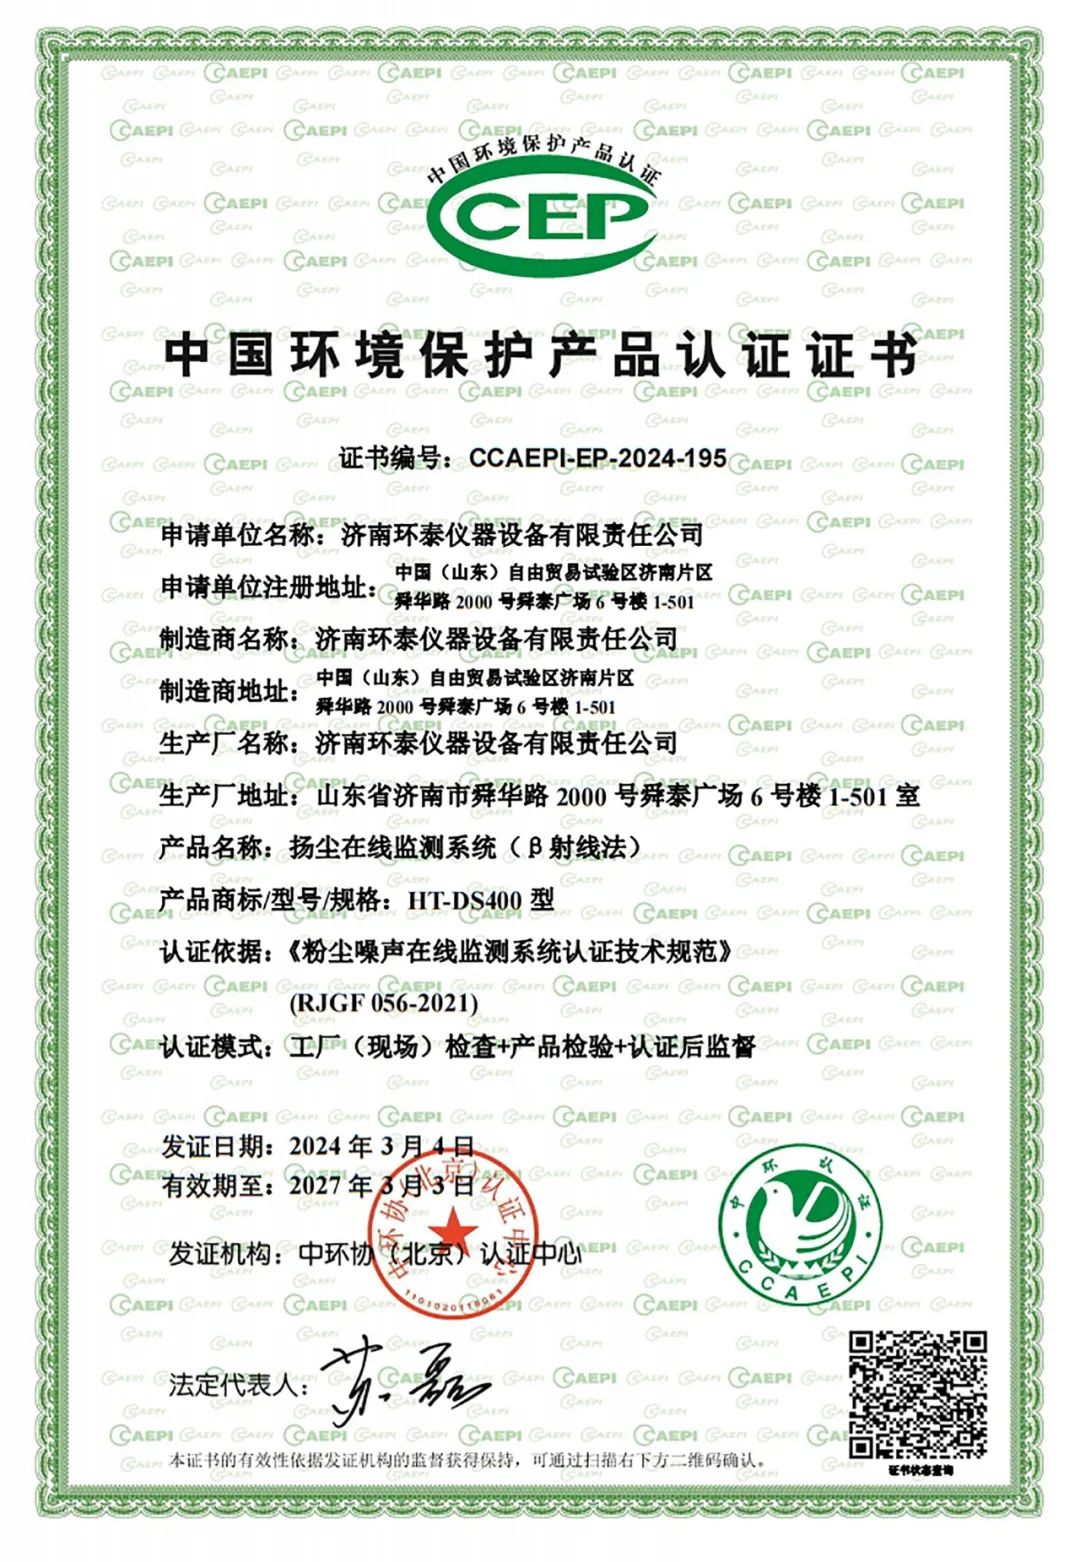 喜报 | 我司扬尘在线监测系统（β射线法）荣获CCEP认证及CMA检测报告！